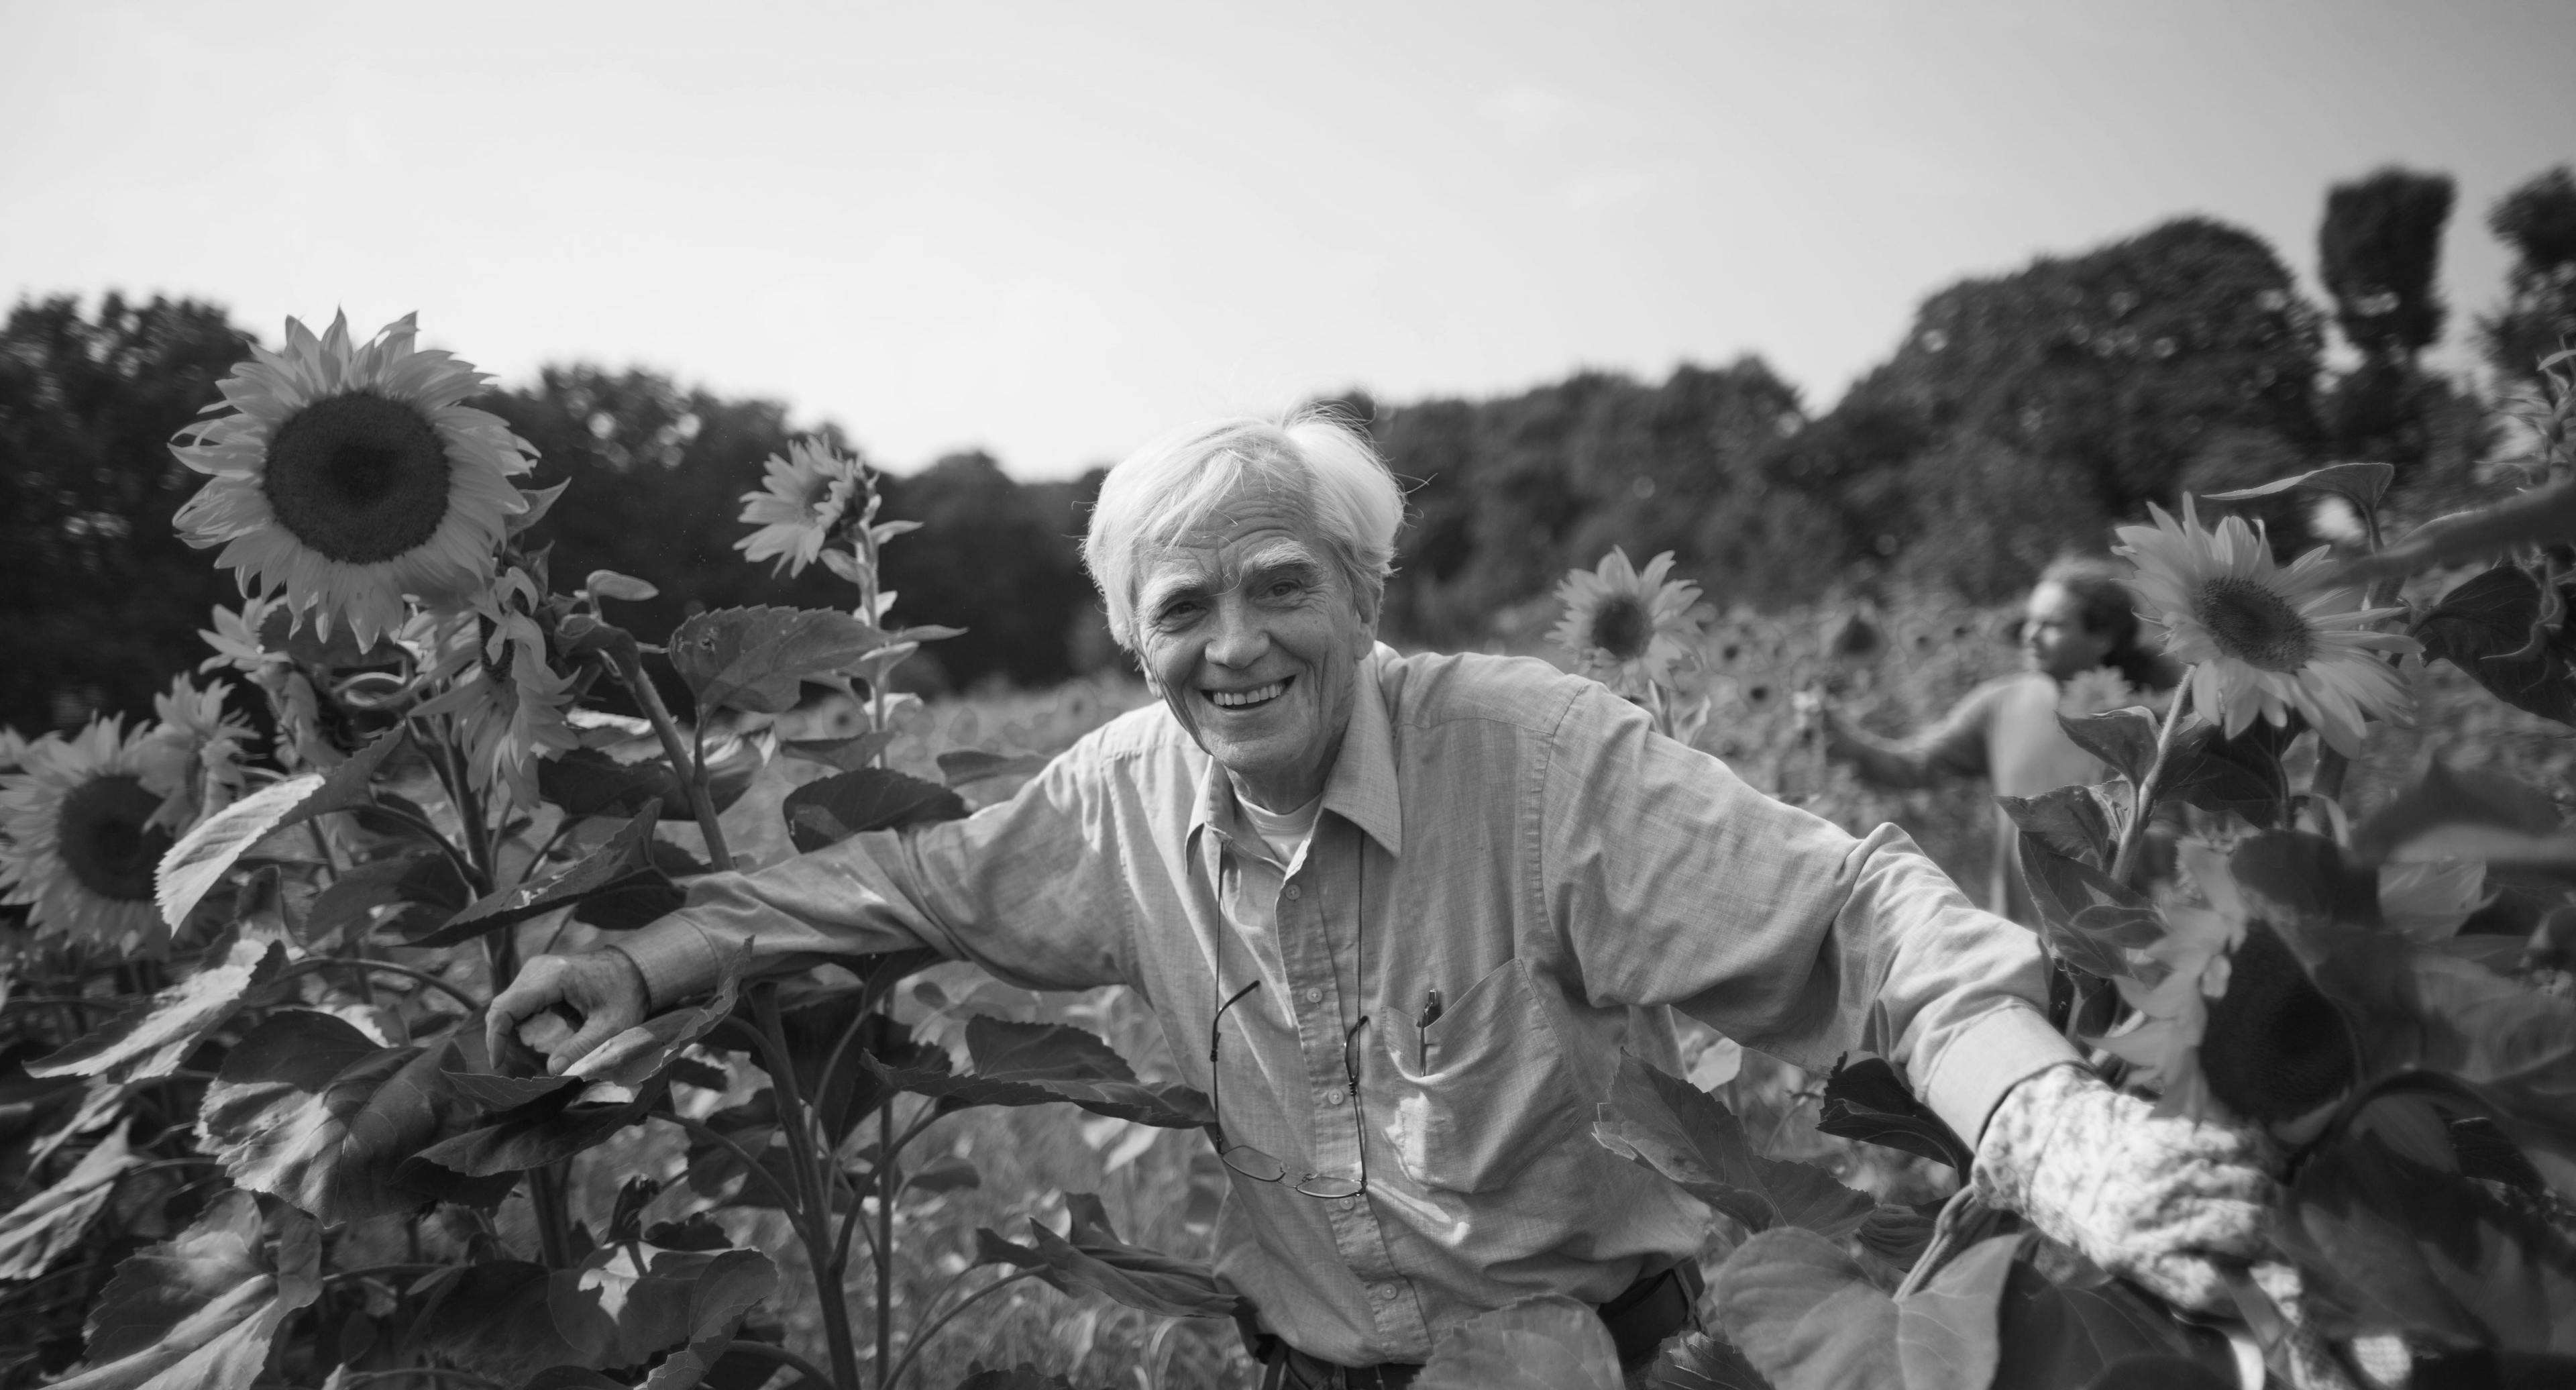 Schwarz-weiß Bild von Hans-Christian Ströbele in einem Sonnenblumenfeld